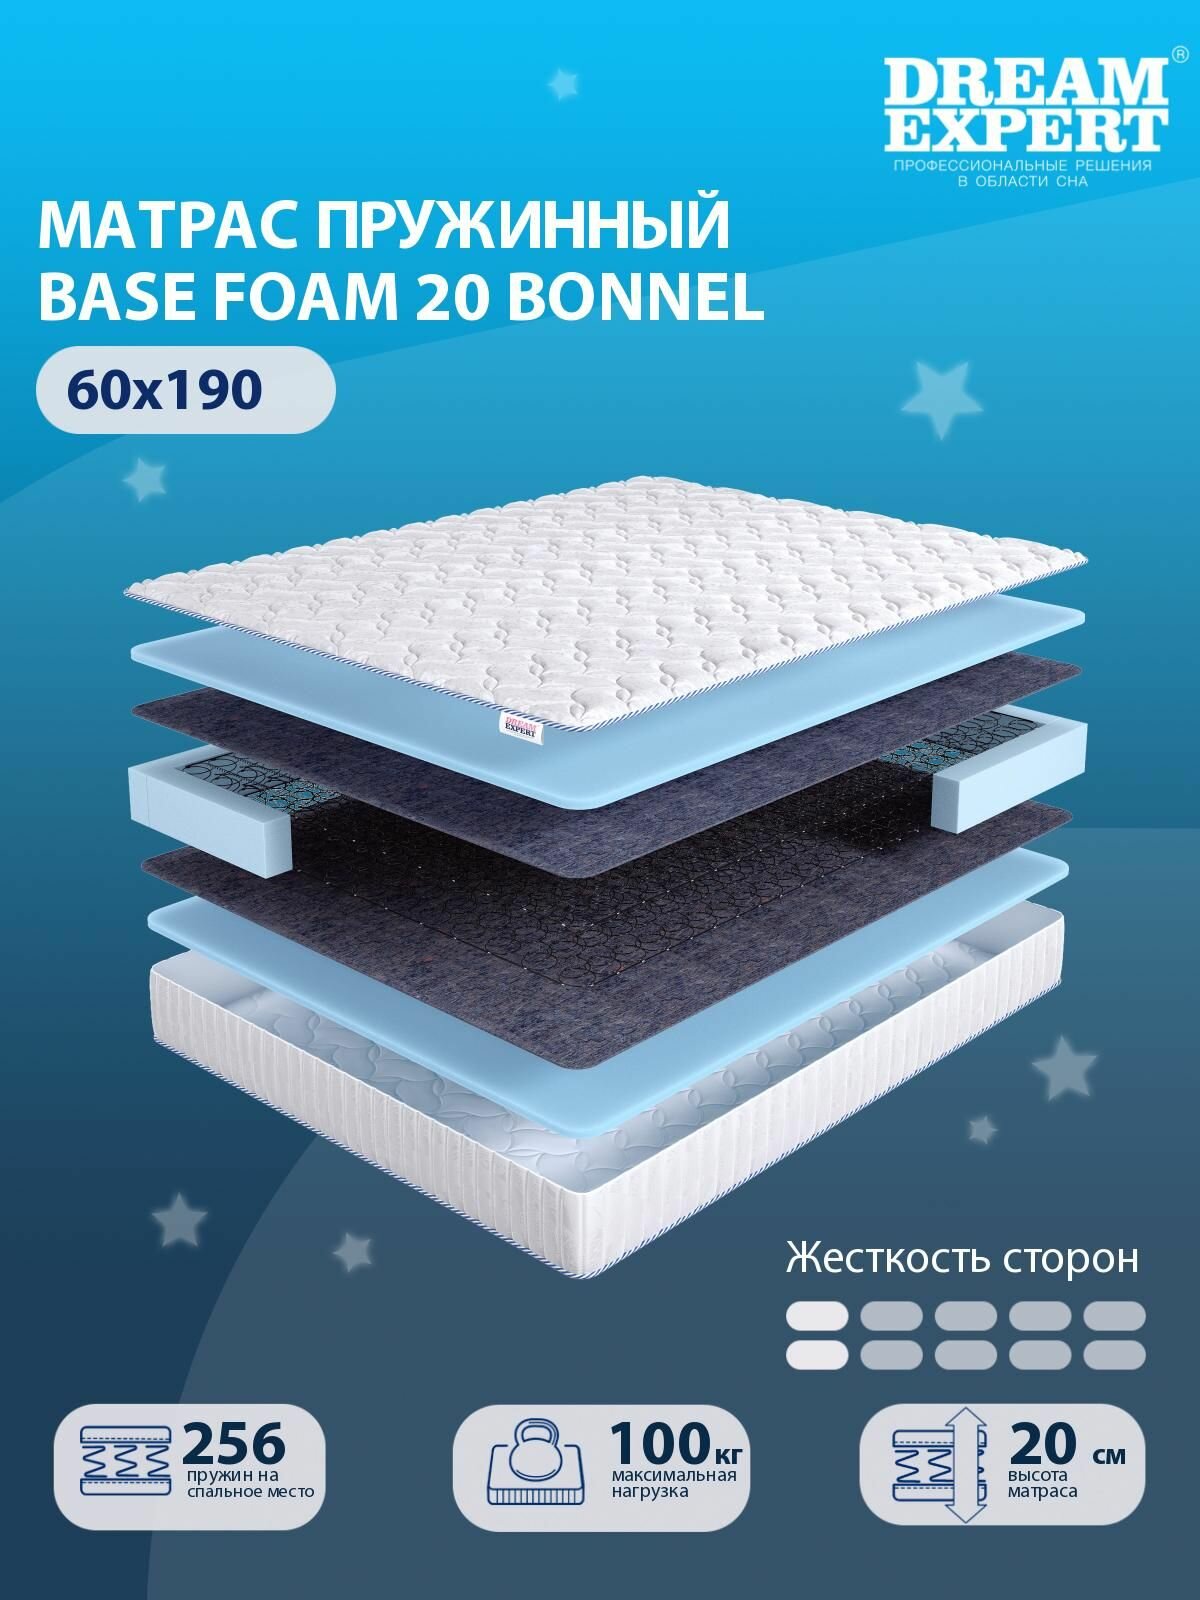 Матрас DreamExpert Base Foam 20 Bonnel низкой жесткости, детский, зависимый пружинный блок, на кровать 60x190